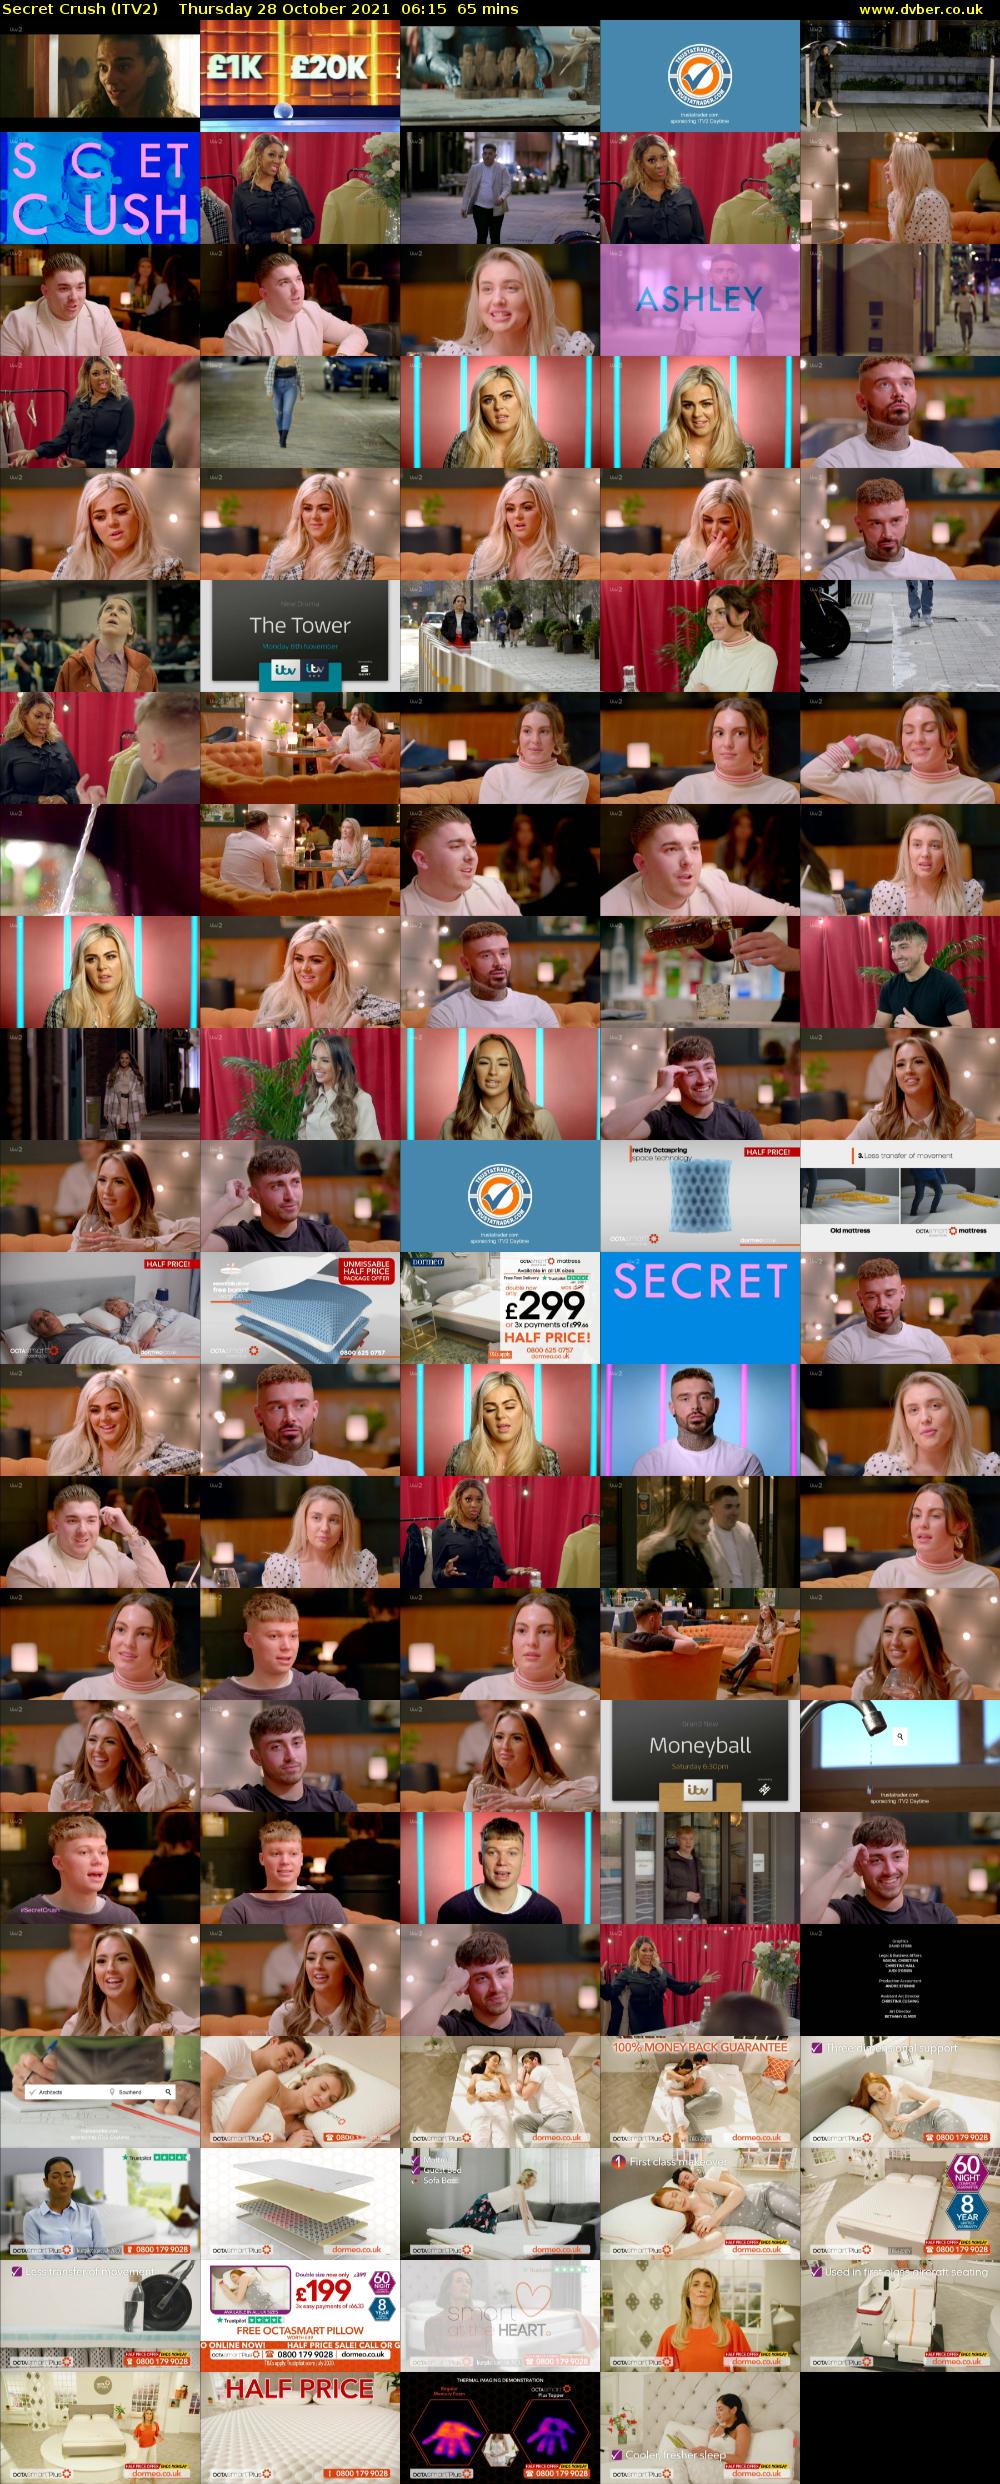 Secret Crush (ITV2) Thursday 28 October 2021 06:15 - 07:20